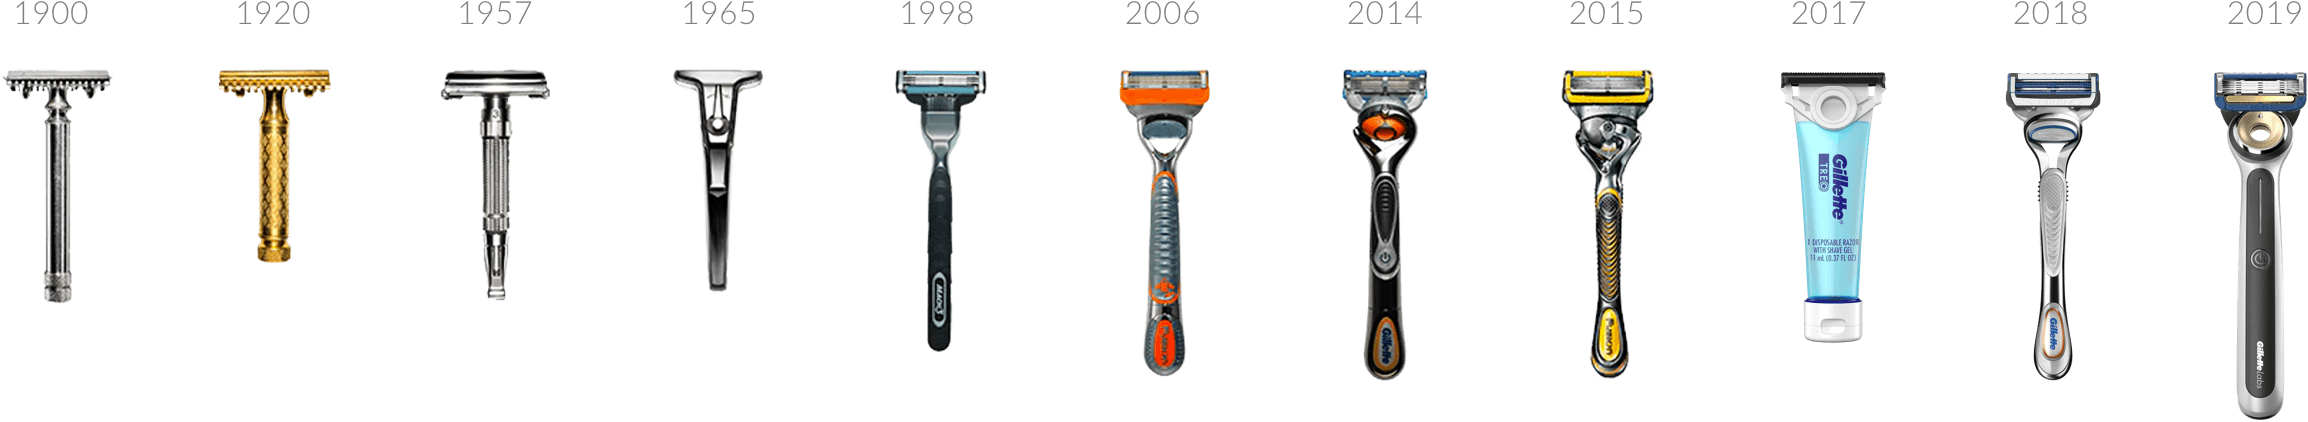 history of razors